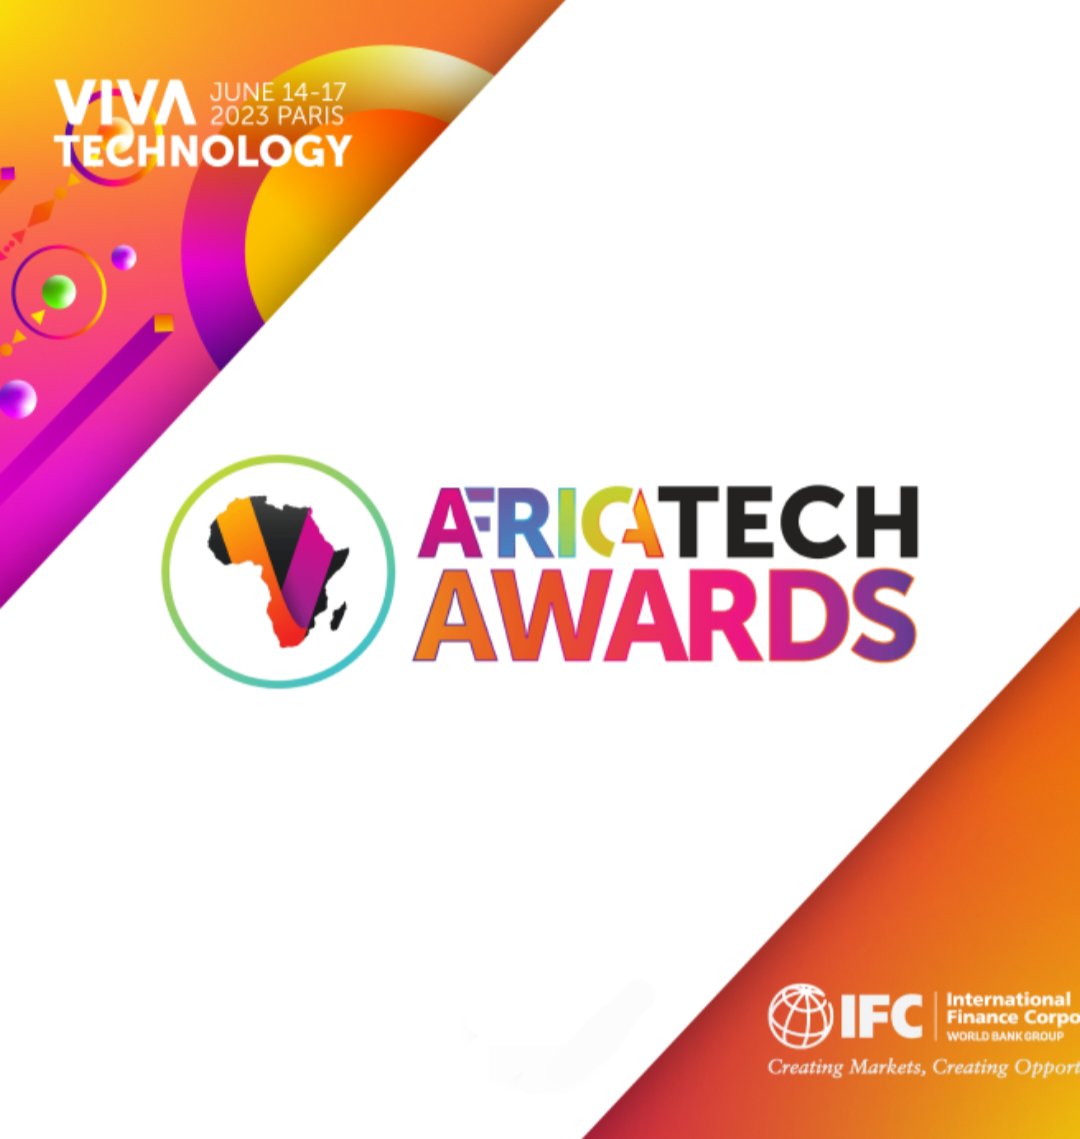 Place à présent aux résultats du concours AfricaTech Awards.
La startup camerounaise Waspito est en compétition dans la catégorie Heathtech #VivaTech2023.